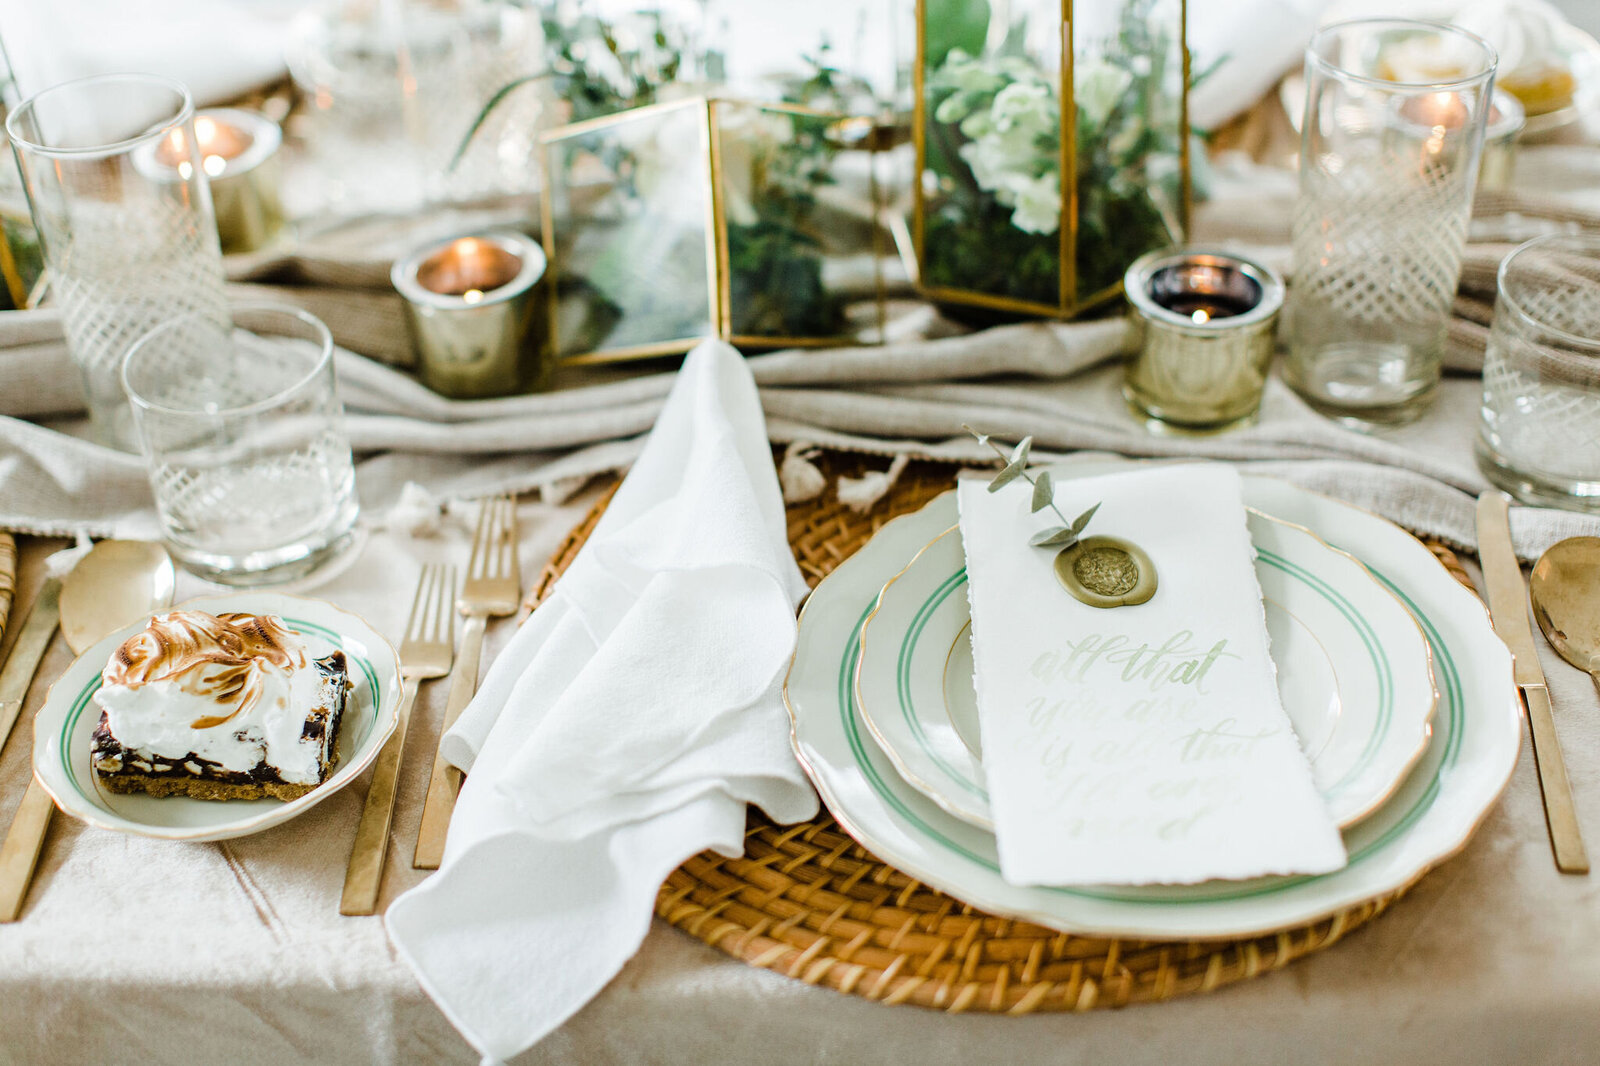 chciago wedding photography, table decor, table design for evet